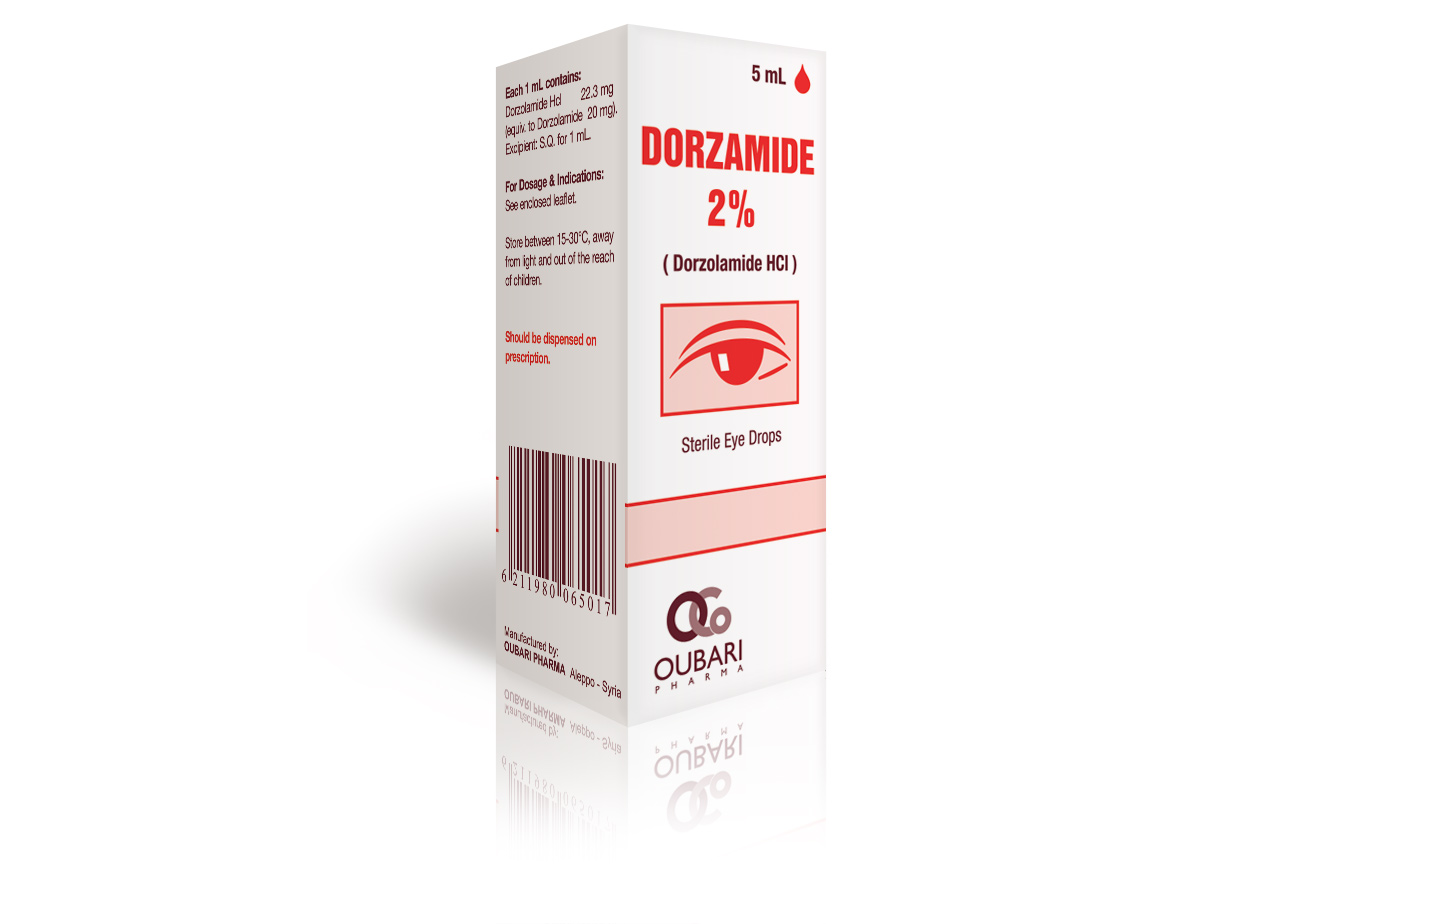 قطرة / نقط دورزولاميد Dorzolamide لـ علاج حالات ارتفاع ضغط العين